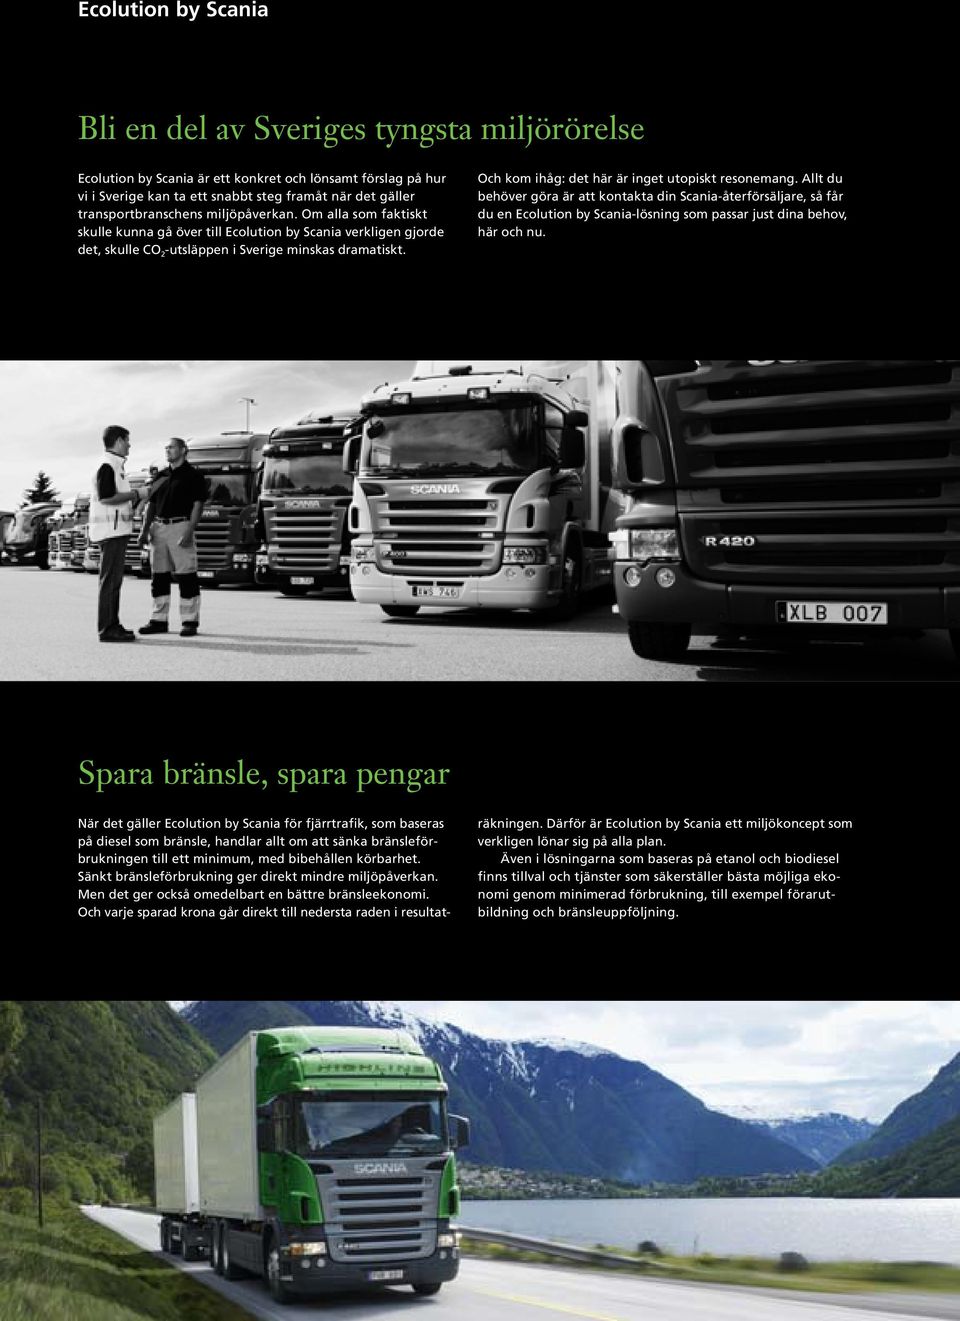 Och kom ihåg: det här är inget utopiskt resonemang. Allt du behöver göra är att kontakta din Scania-återförsäljare, så får du en Ecolution by Scania-lösning som passar just dina behov, här och nu.